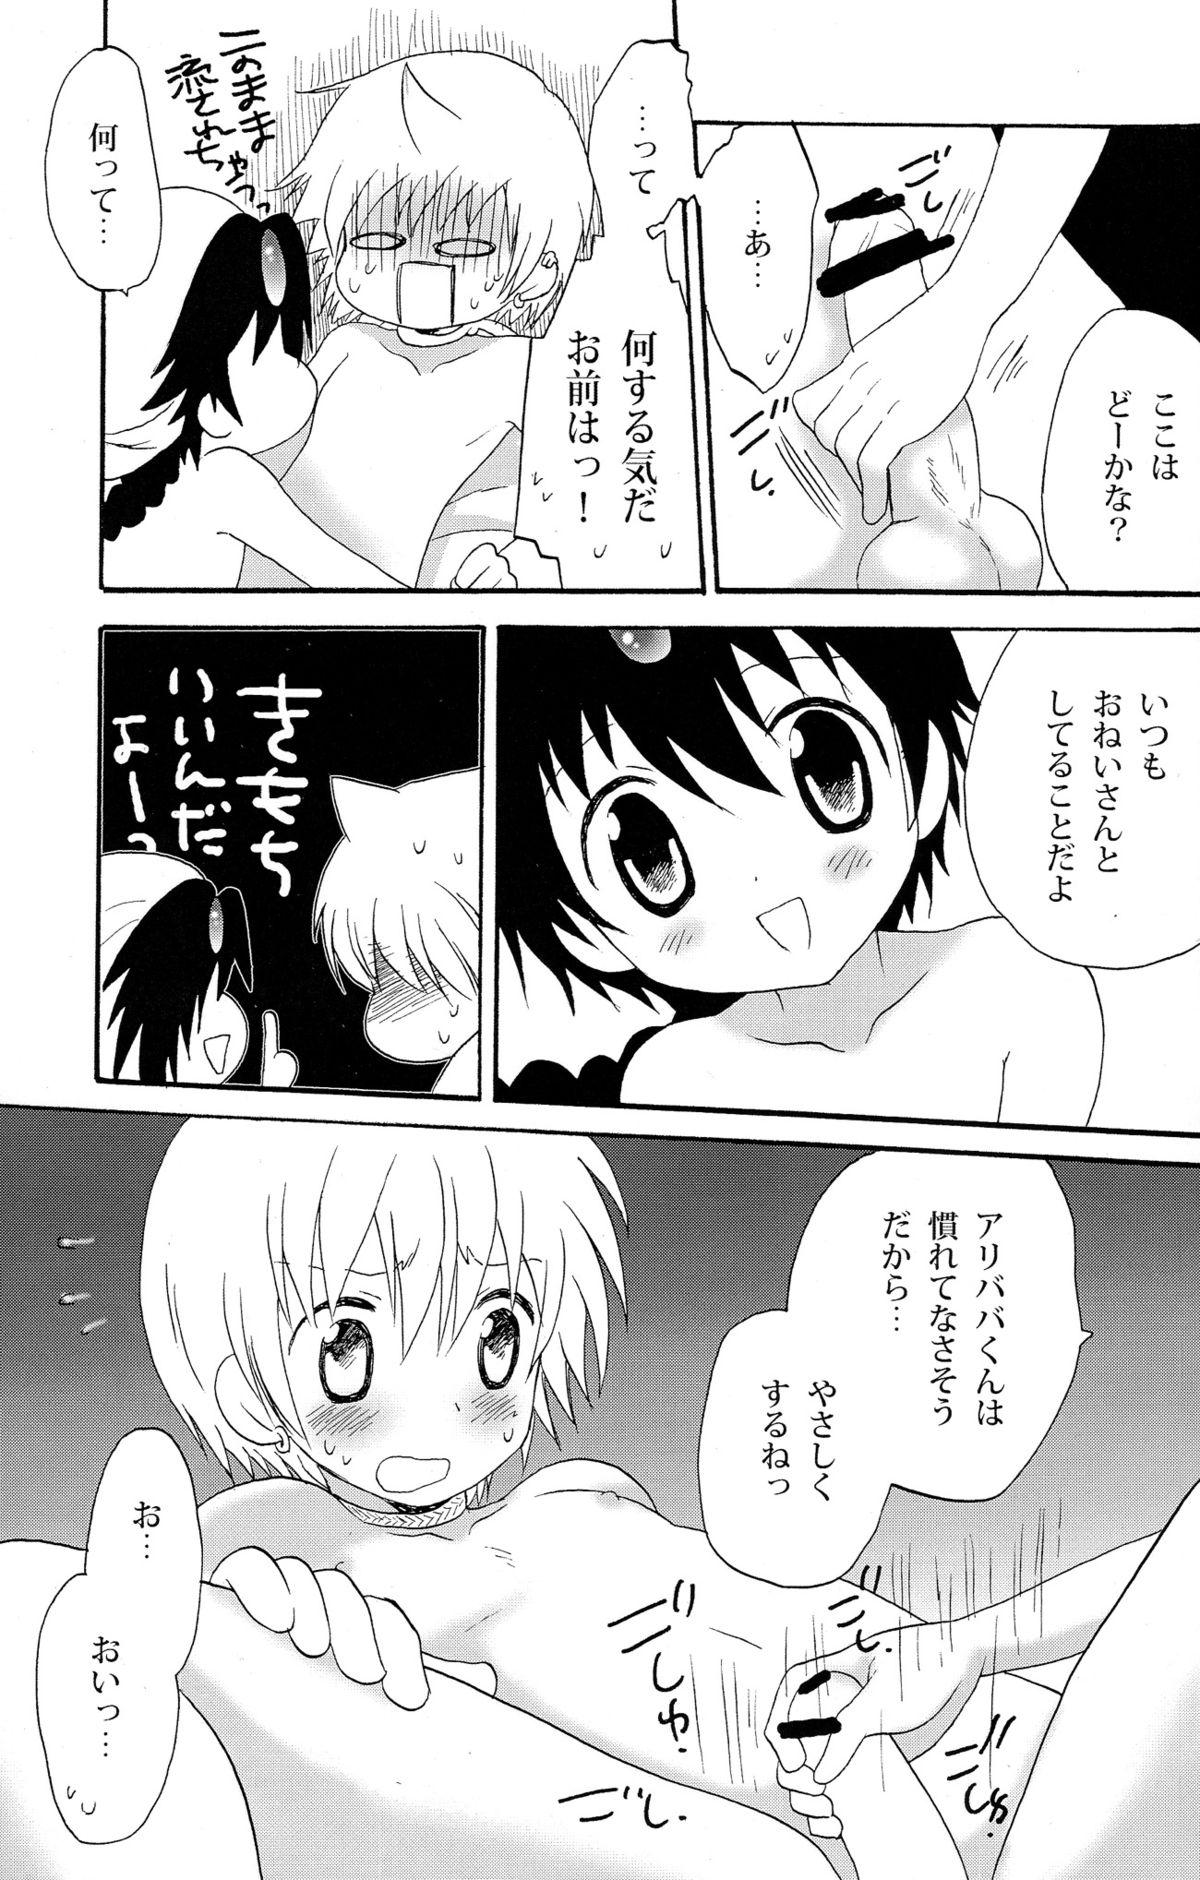 Old And Young Senya Ichiya Night Kiss Club - Magi the labyrinth of magic Gay Emo - Page 7